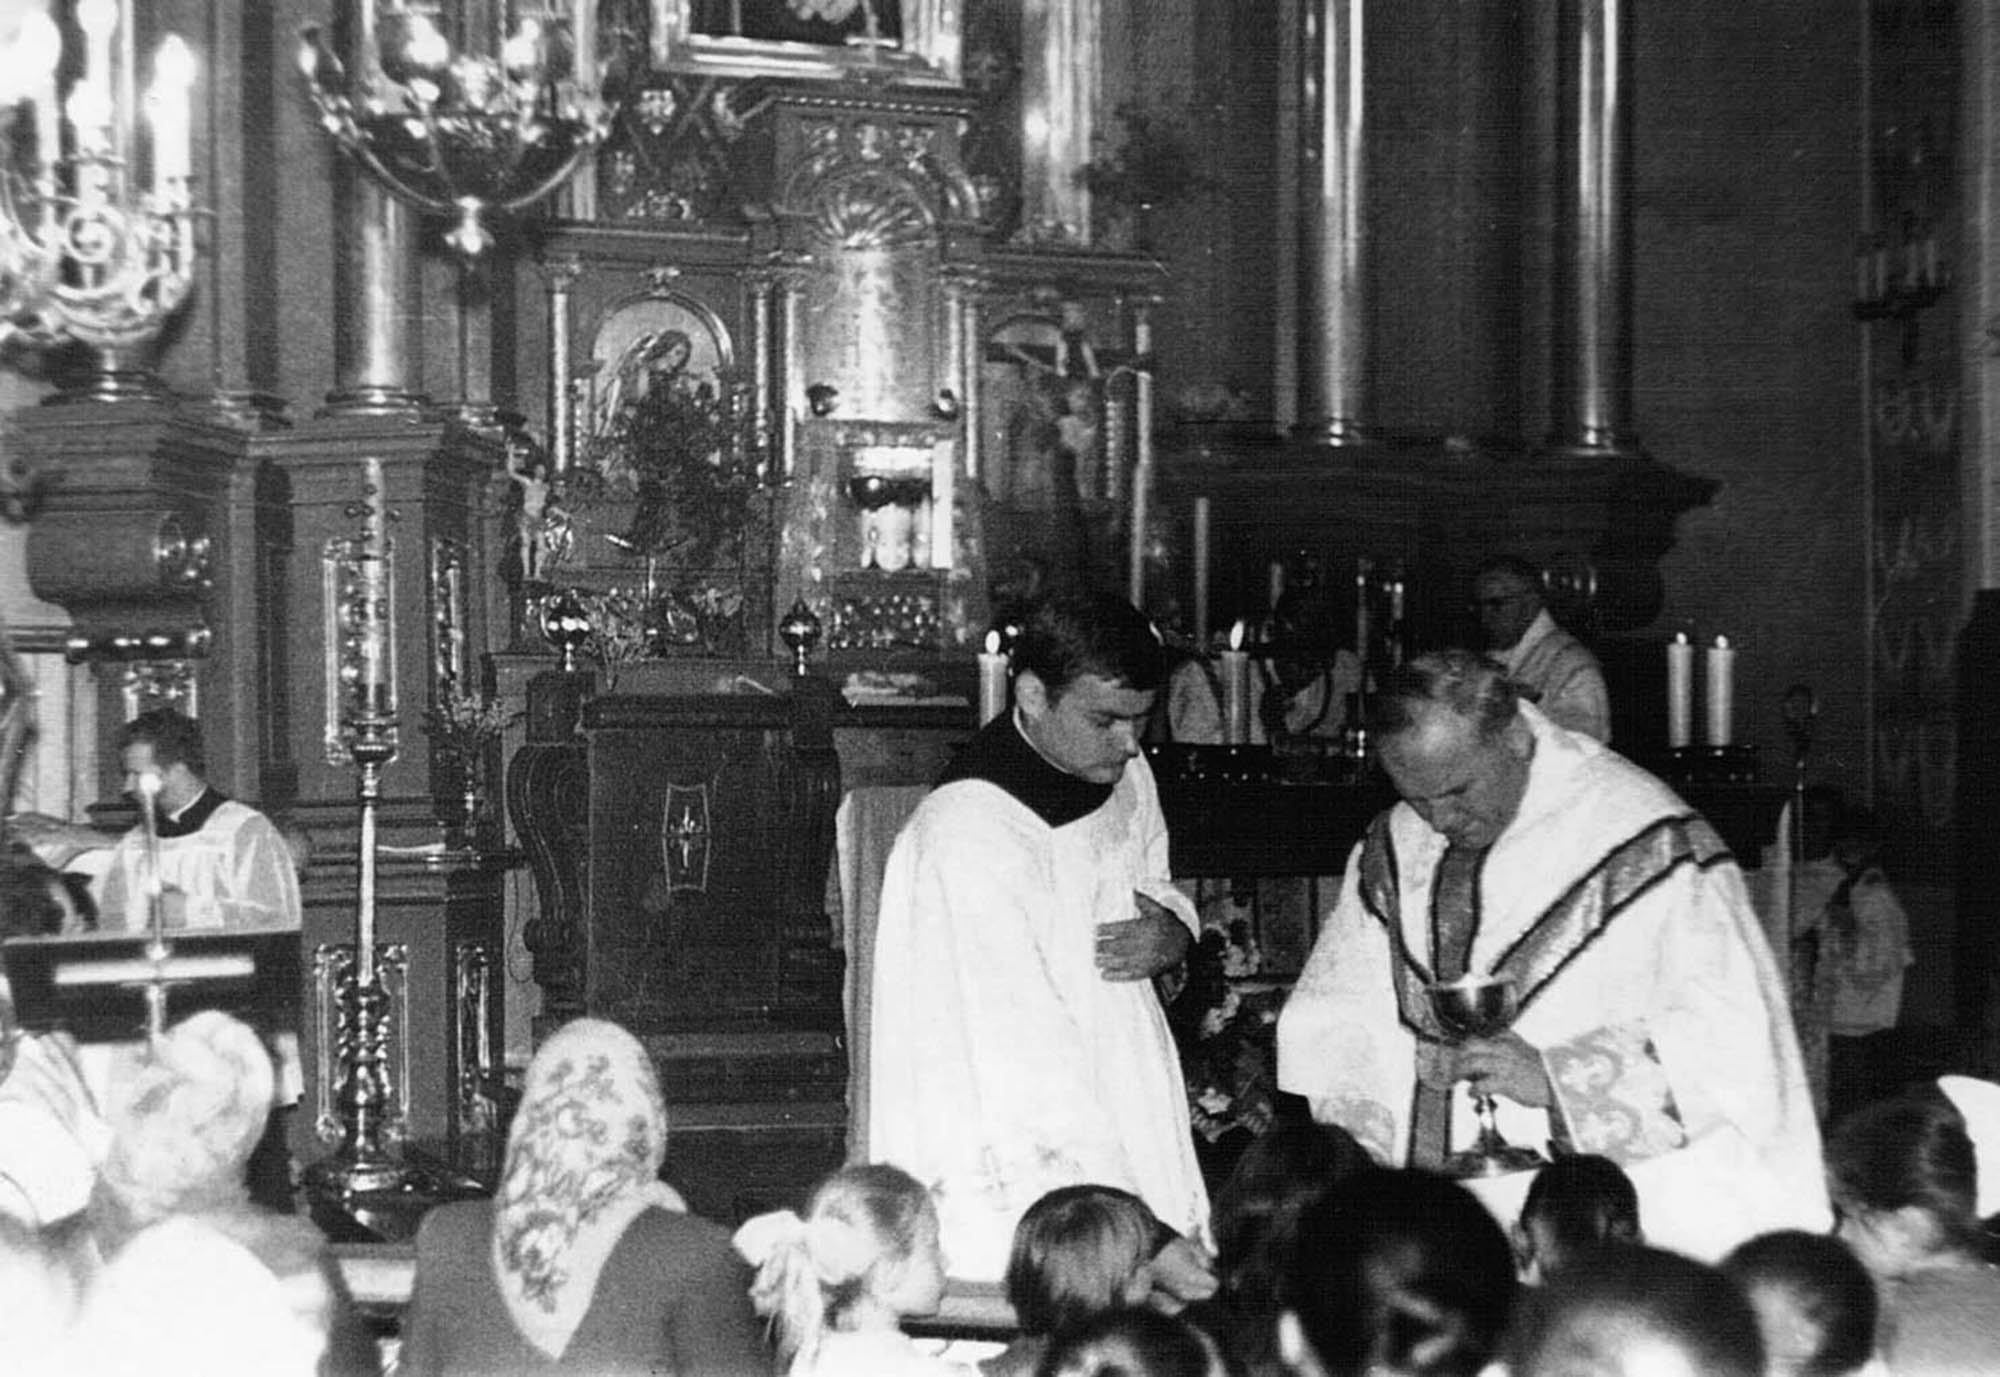 Ks. kard. Karol Wojtyła, obok ks. Kazimierz Jancarz, kościół pw. Przemienienia Pańskiego, Maków Podhalański, lata 70. XX w.